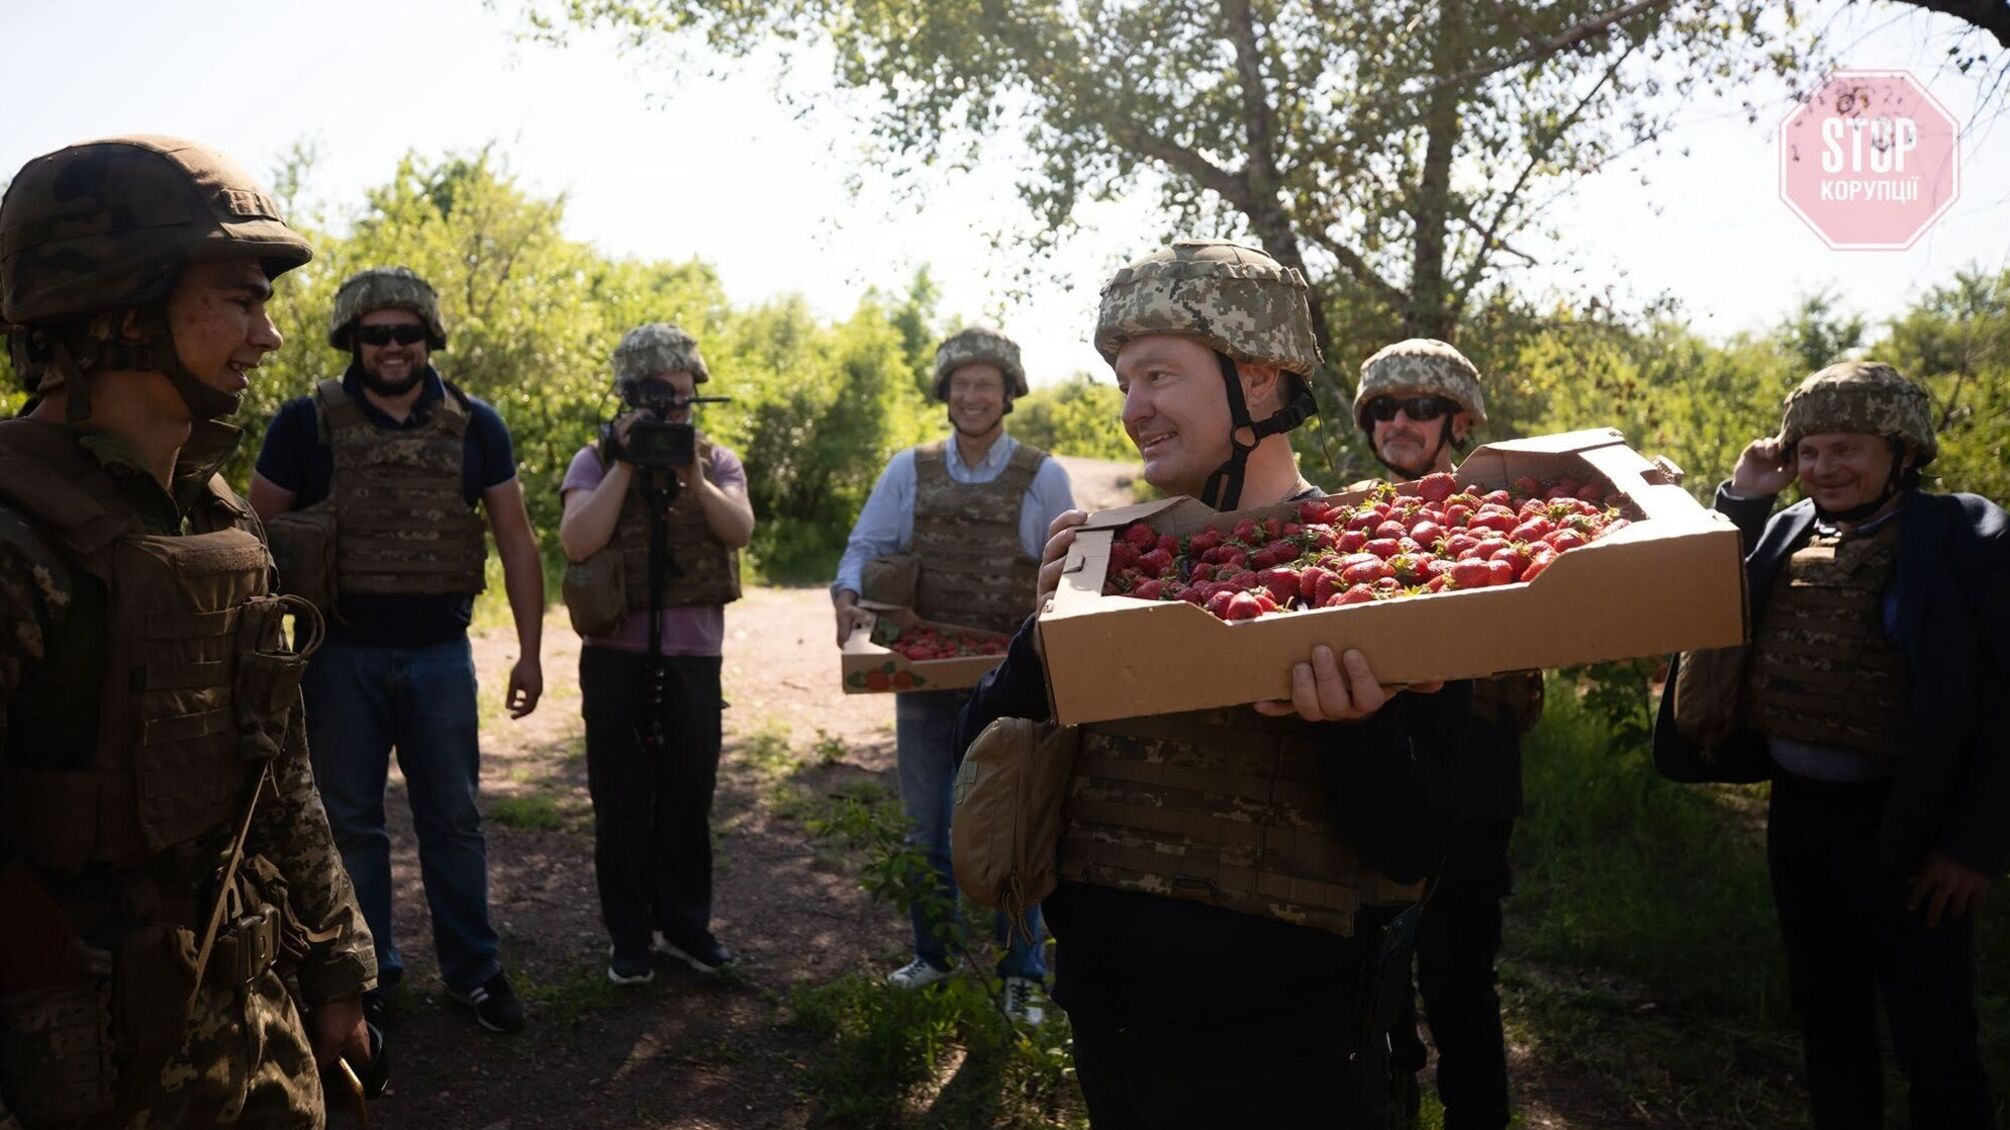 Клубничка от Порошенко: екс-президент привез на передовую ягоды